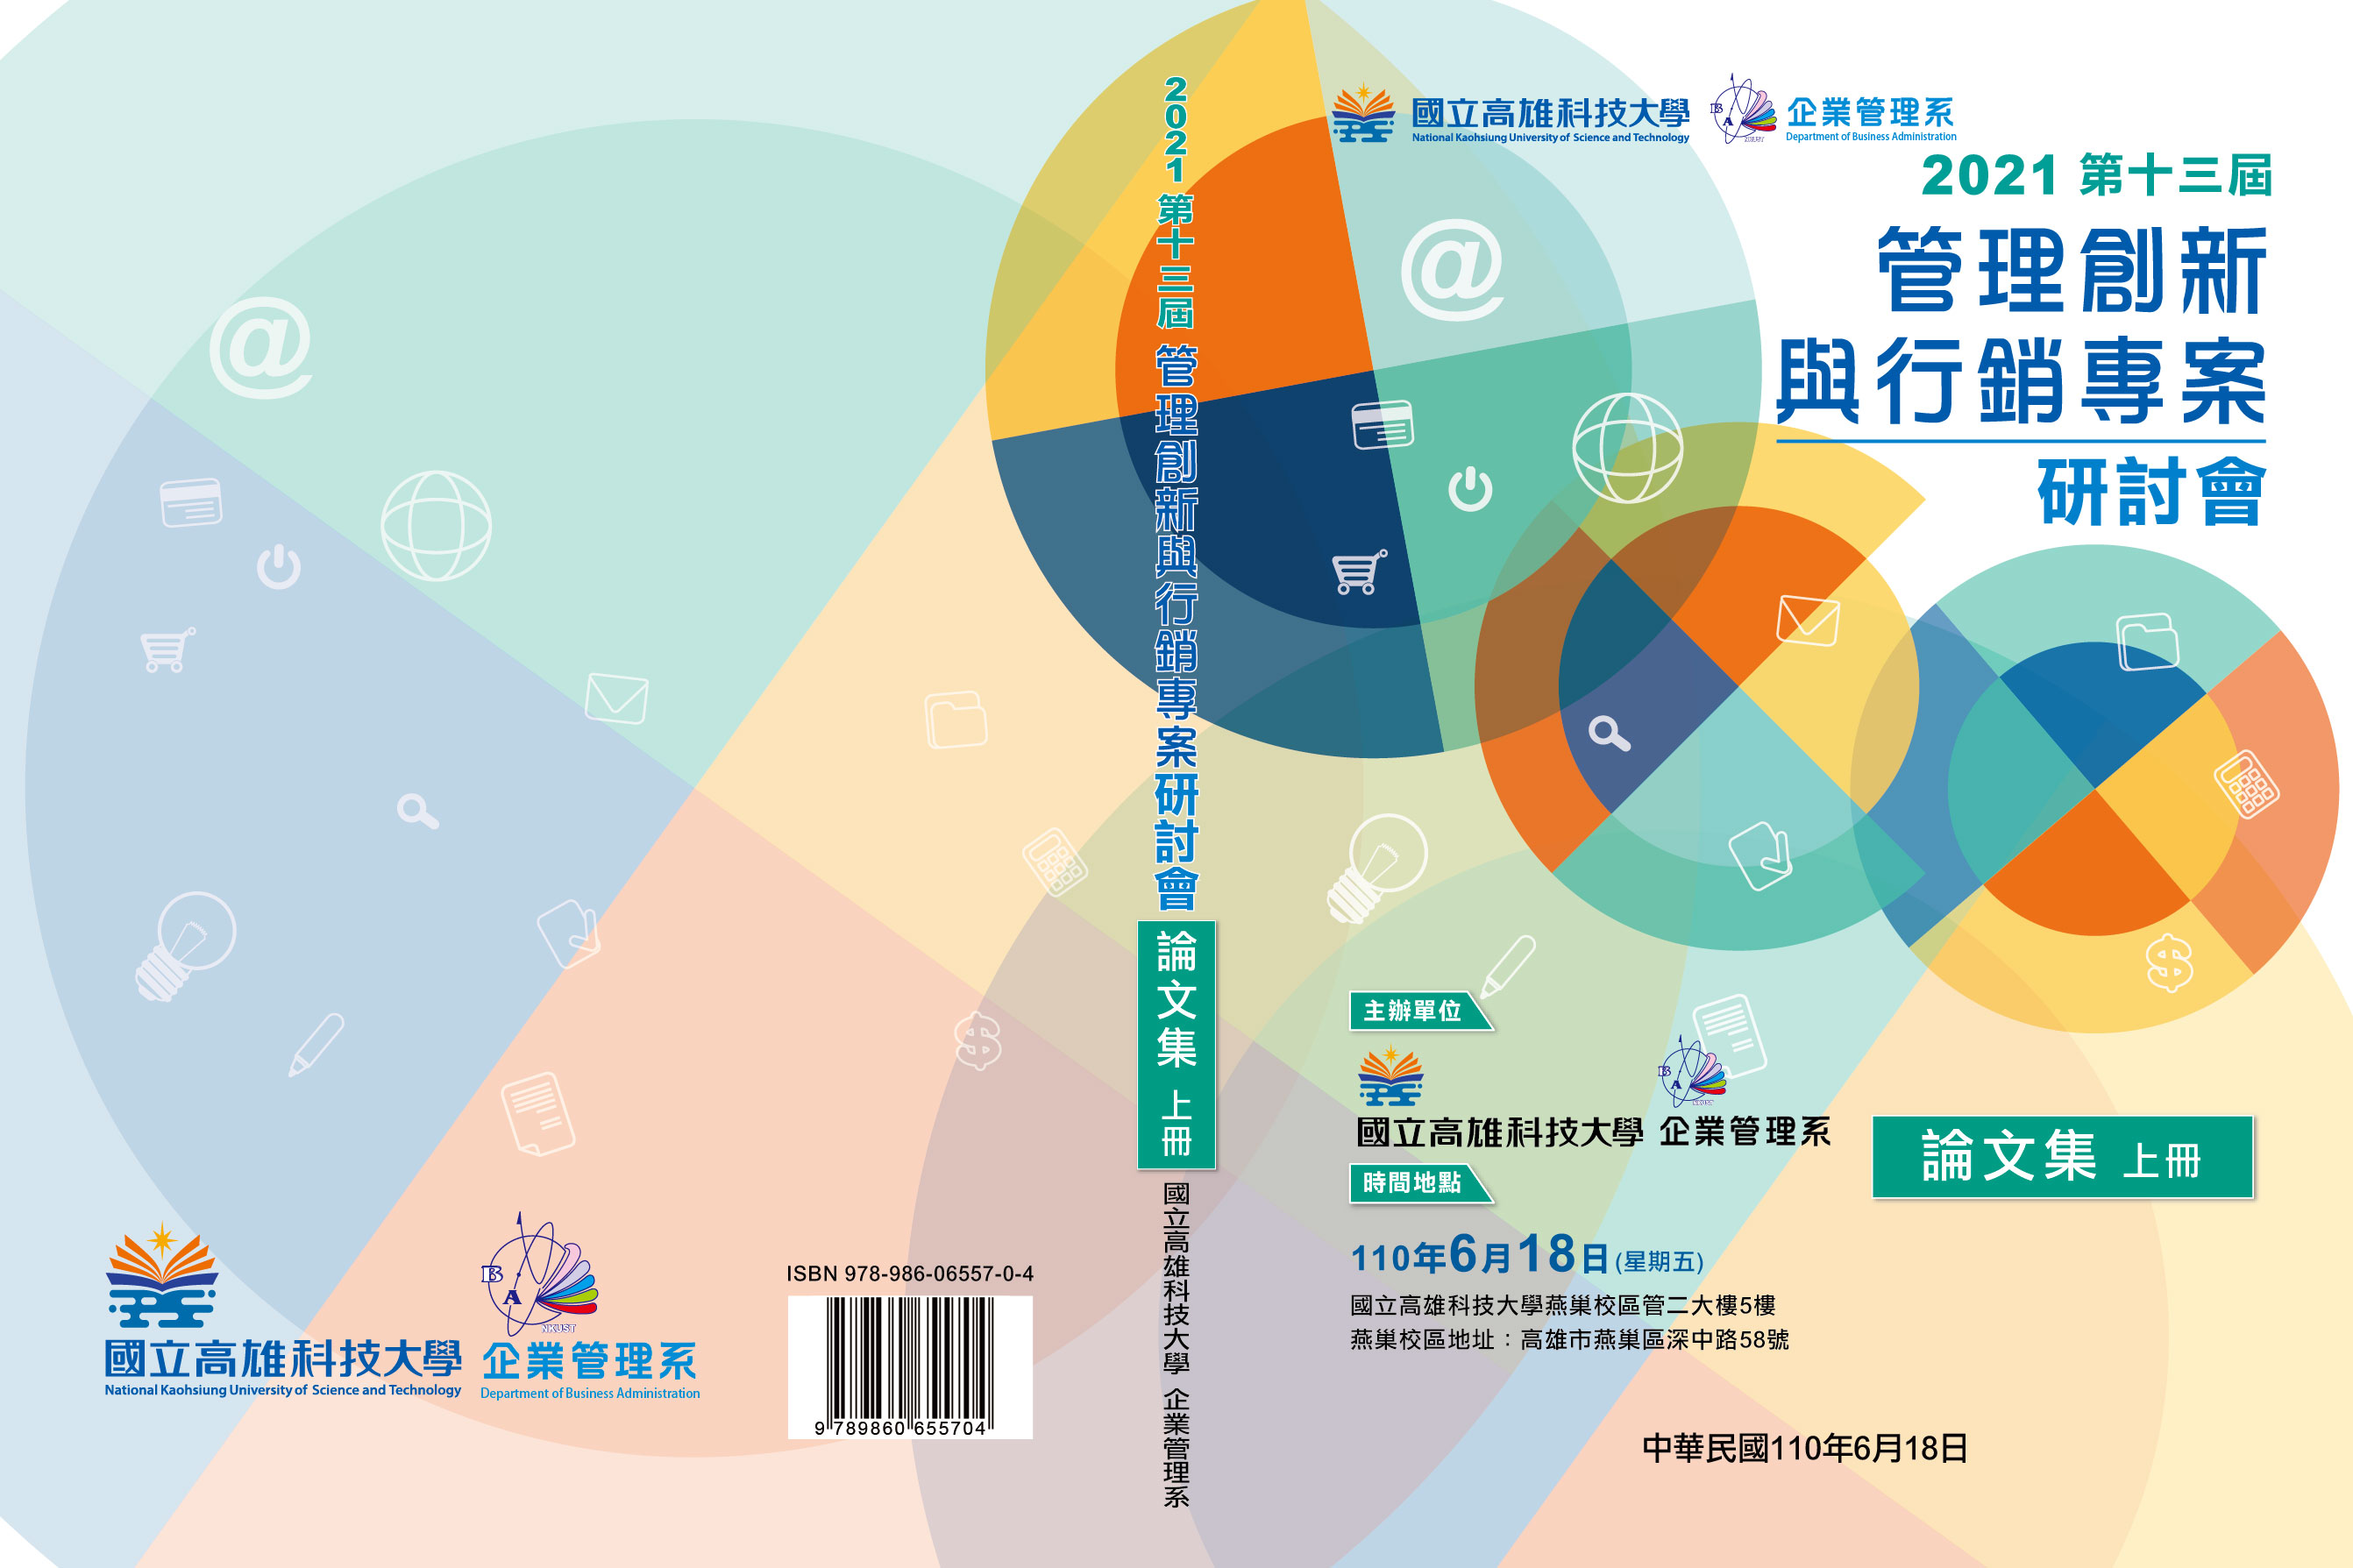 高科大_2021管理創新與行銷專案論文集_上冊封面.jpg